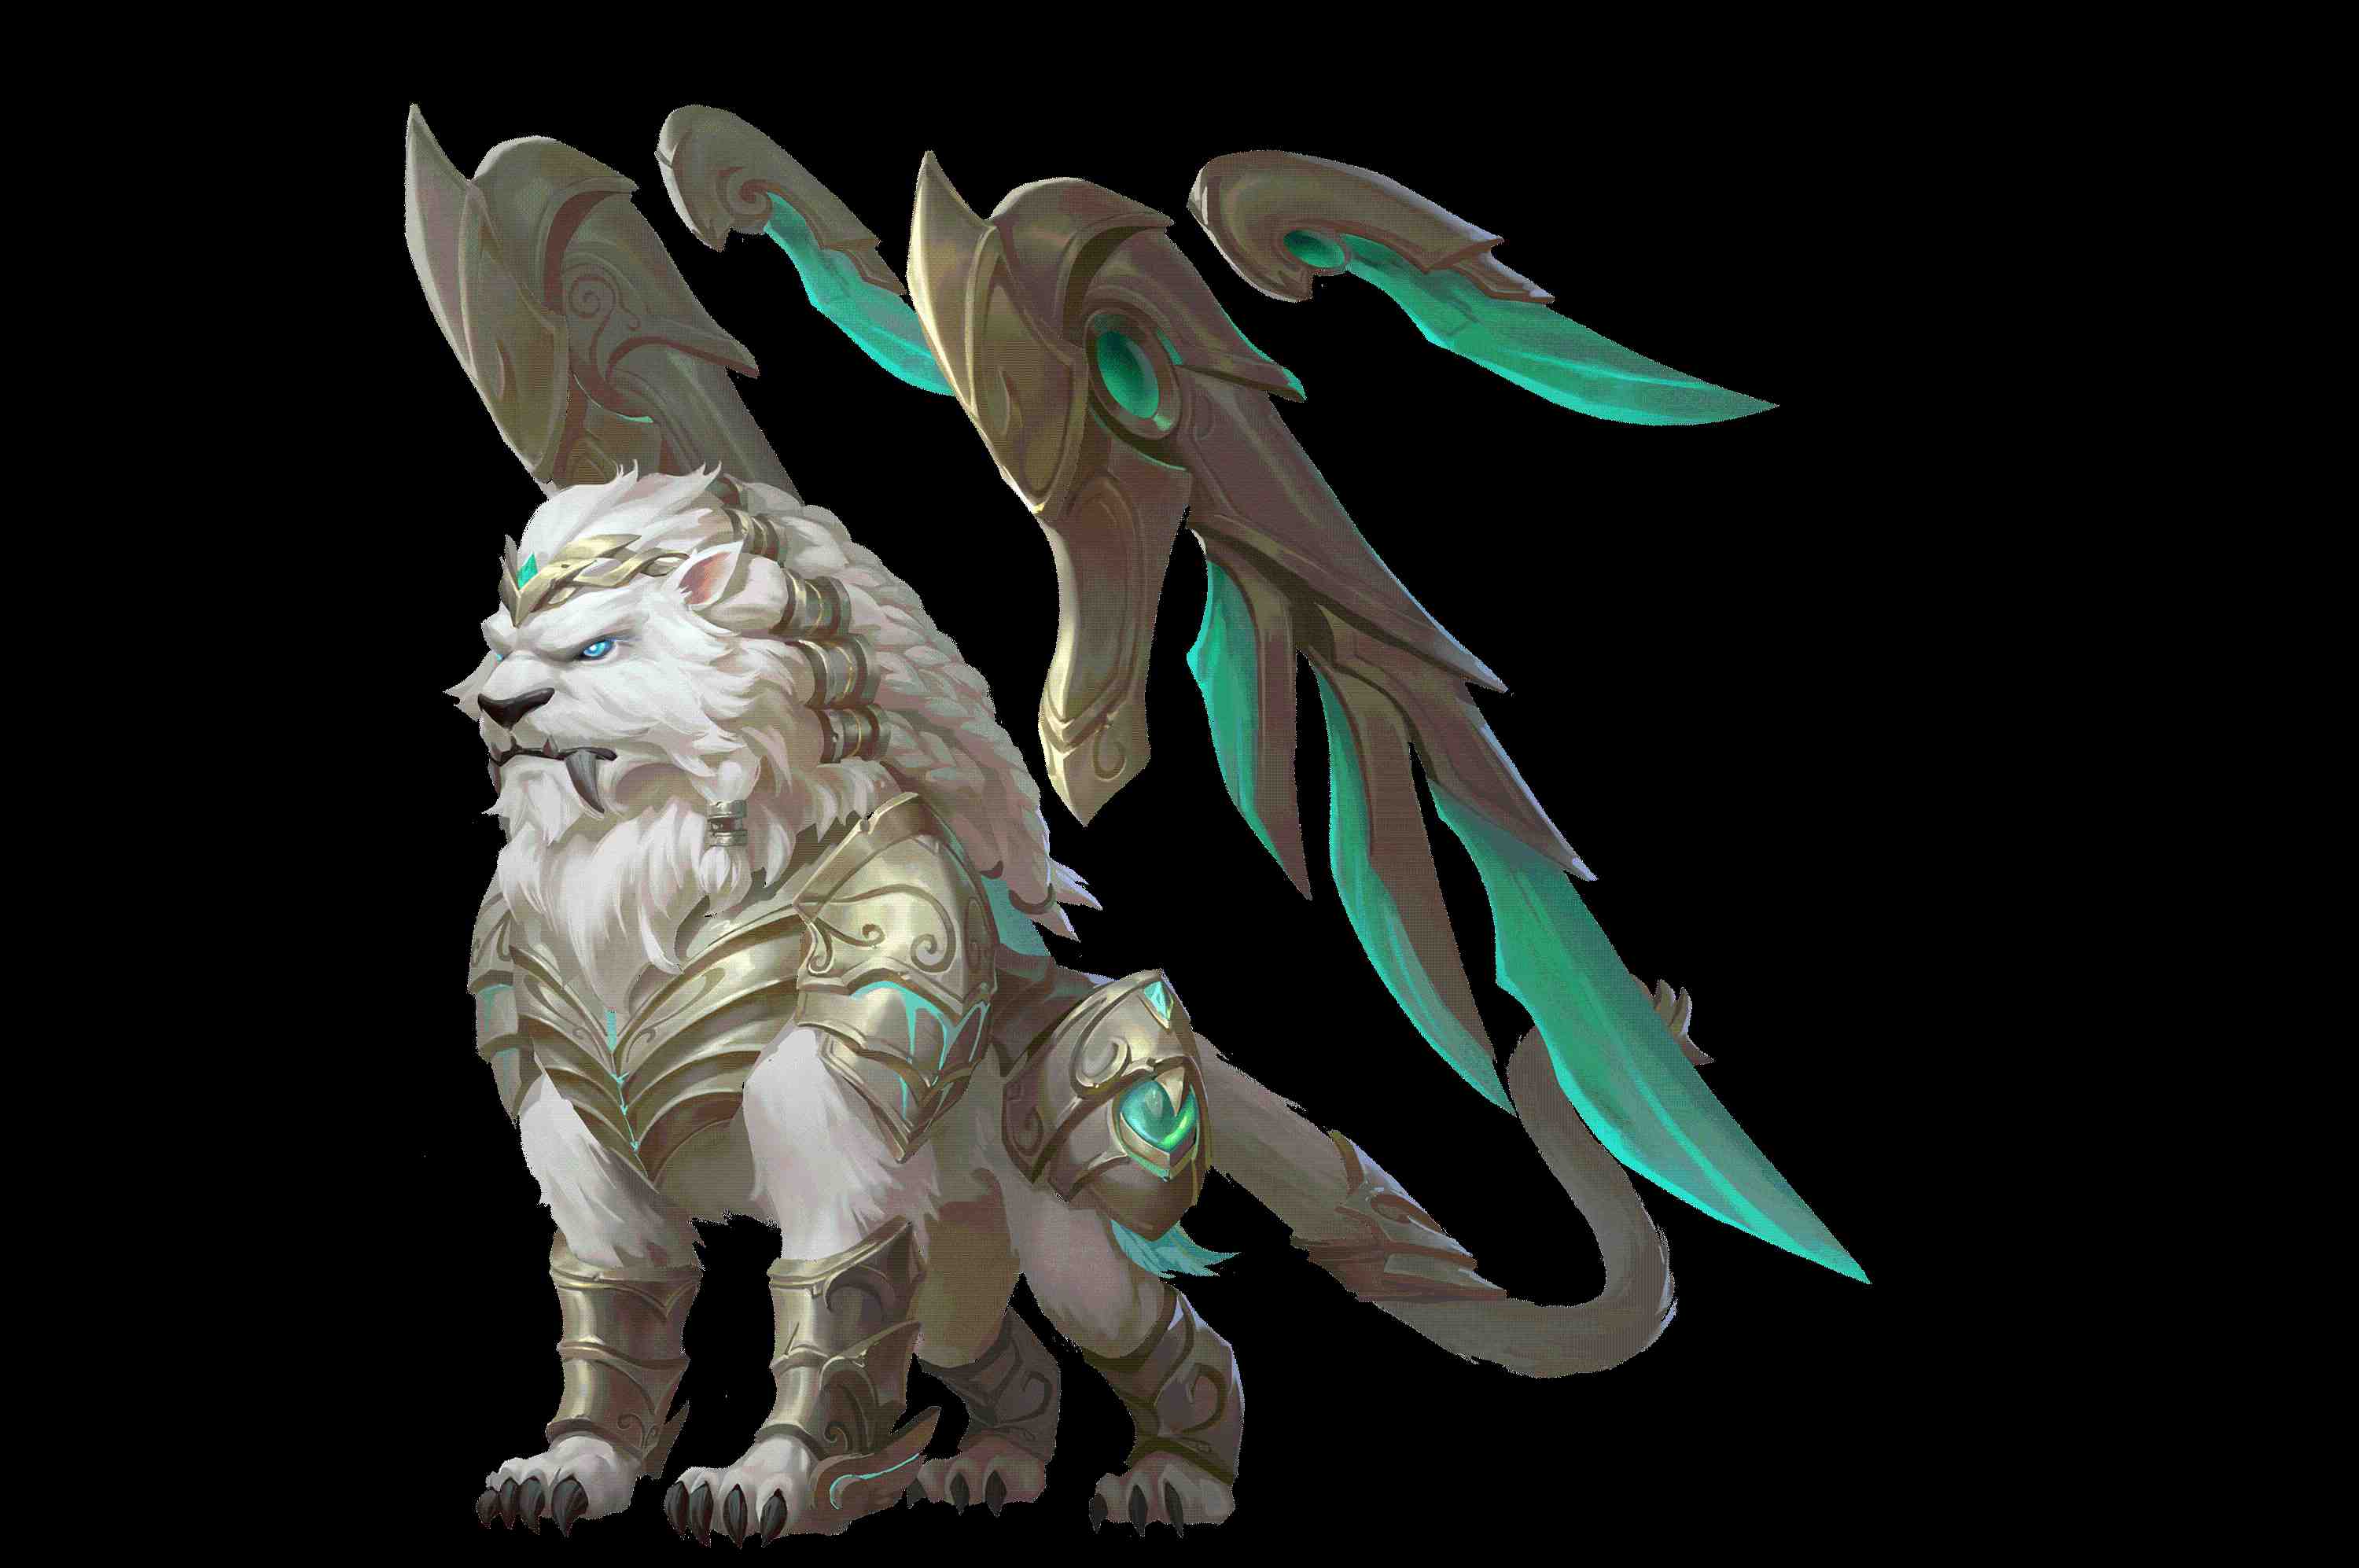 風之聖獸-艾俄洛斯：四方之主神造物，擁有獅子、羽翼、風元素等特徵